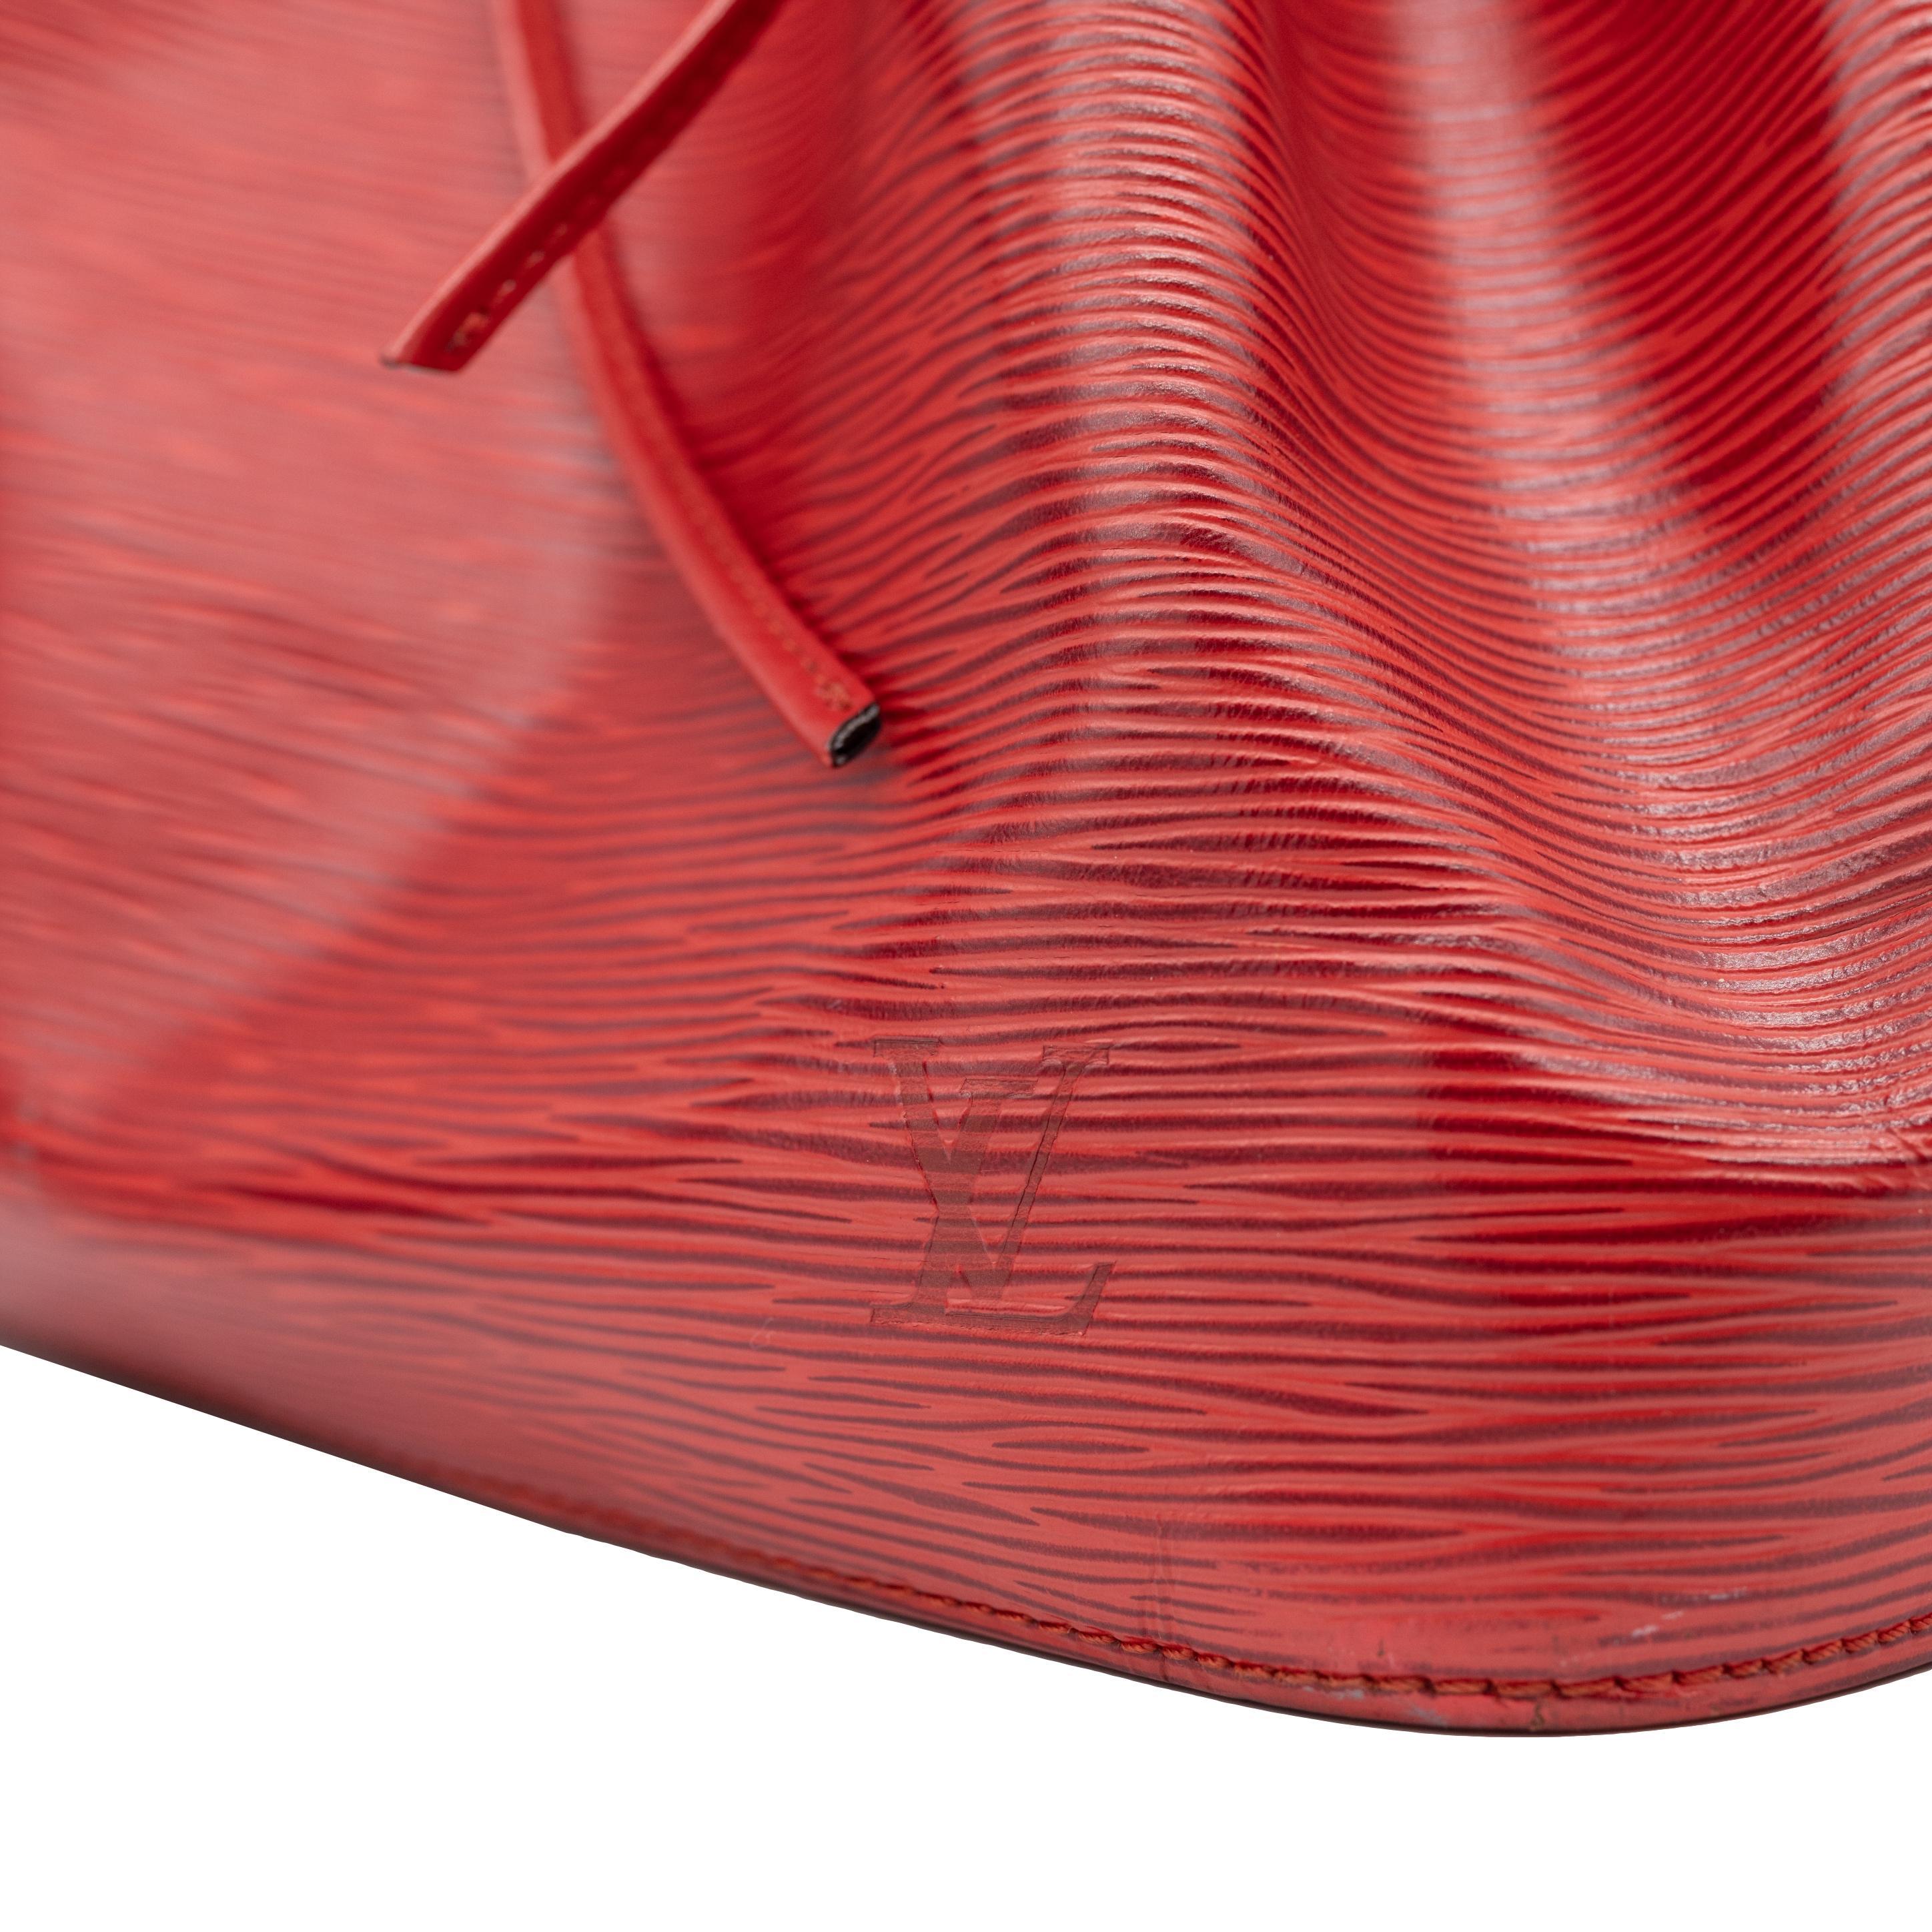 Louis Vuitton “Noe” PM Bucket Bag in Red EPI Leather Shoulder Bag, France 1993. 2